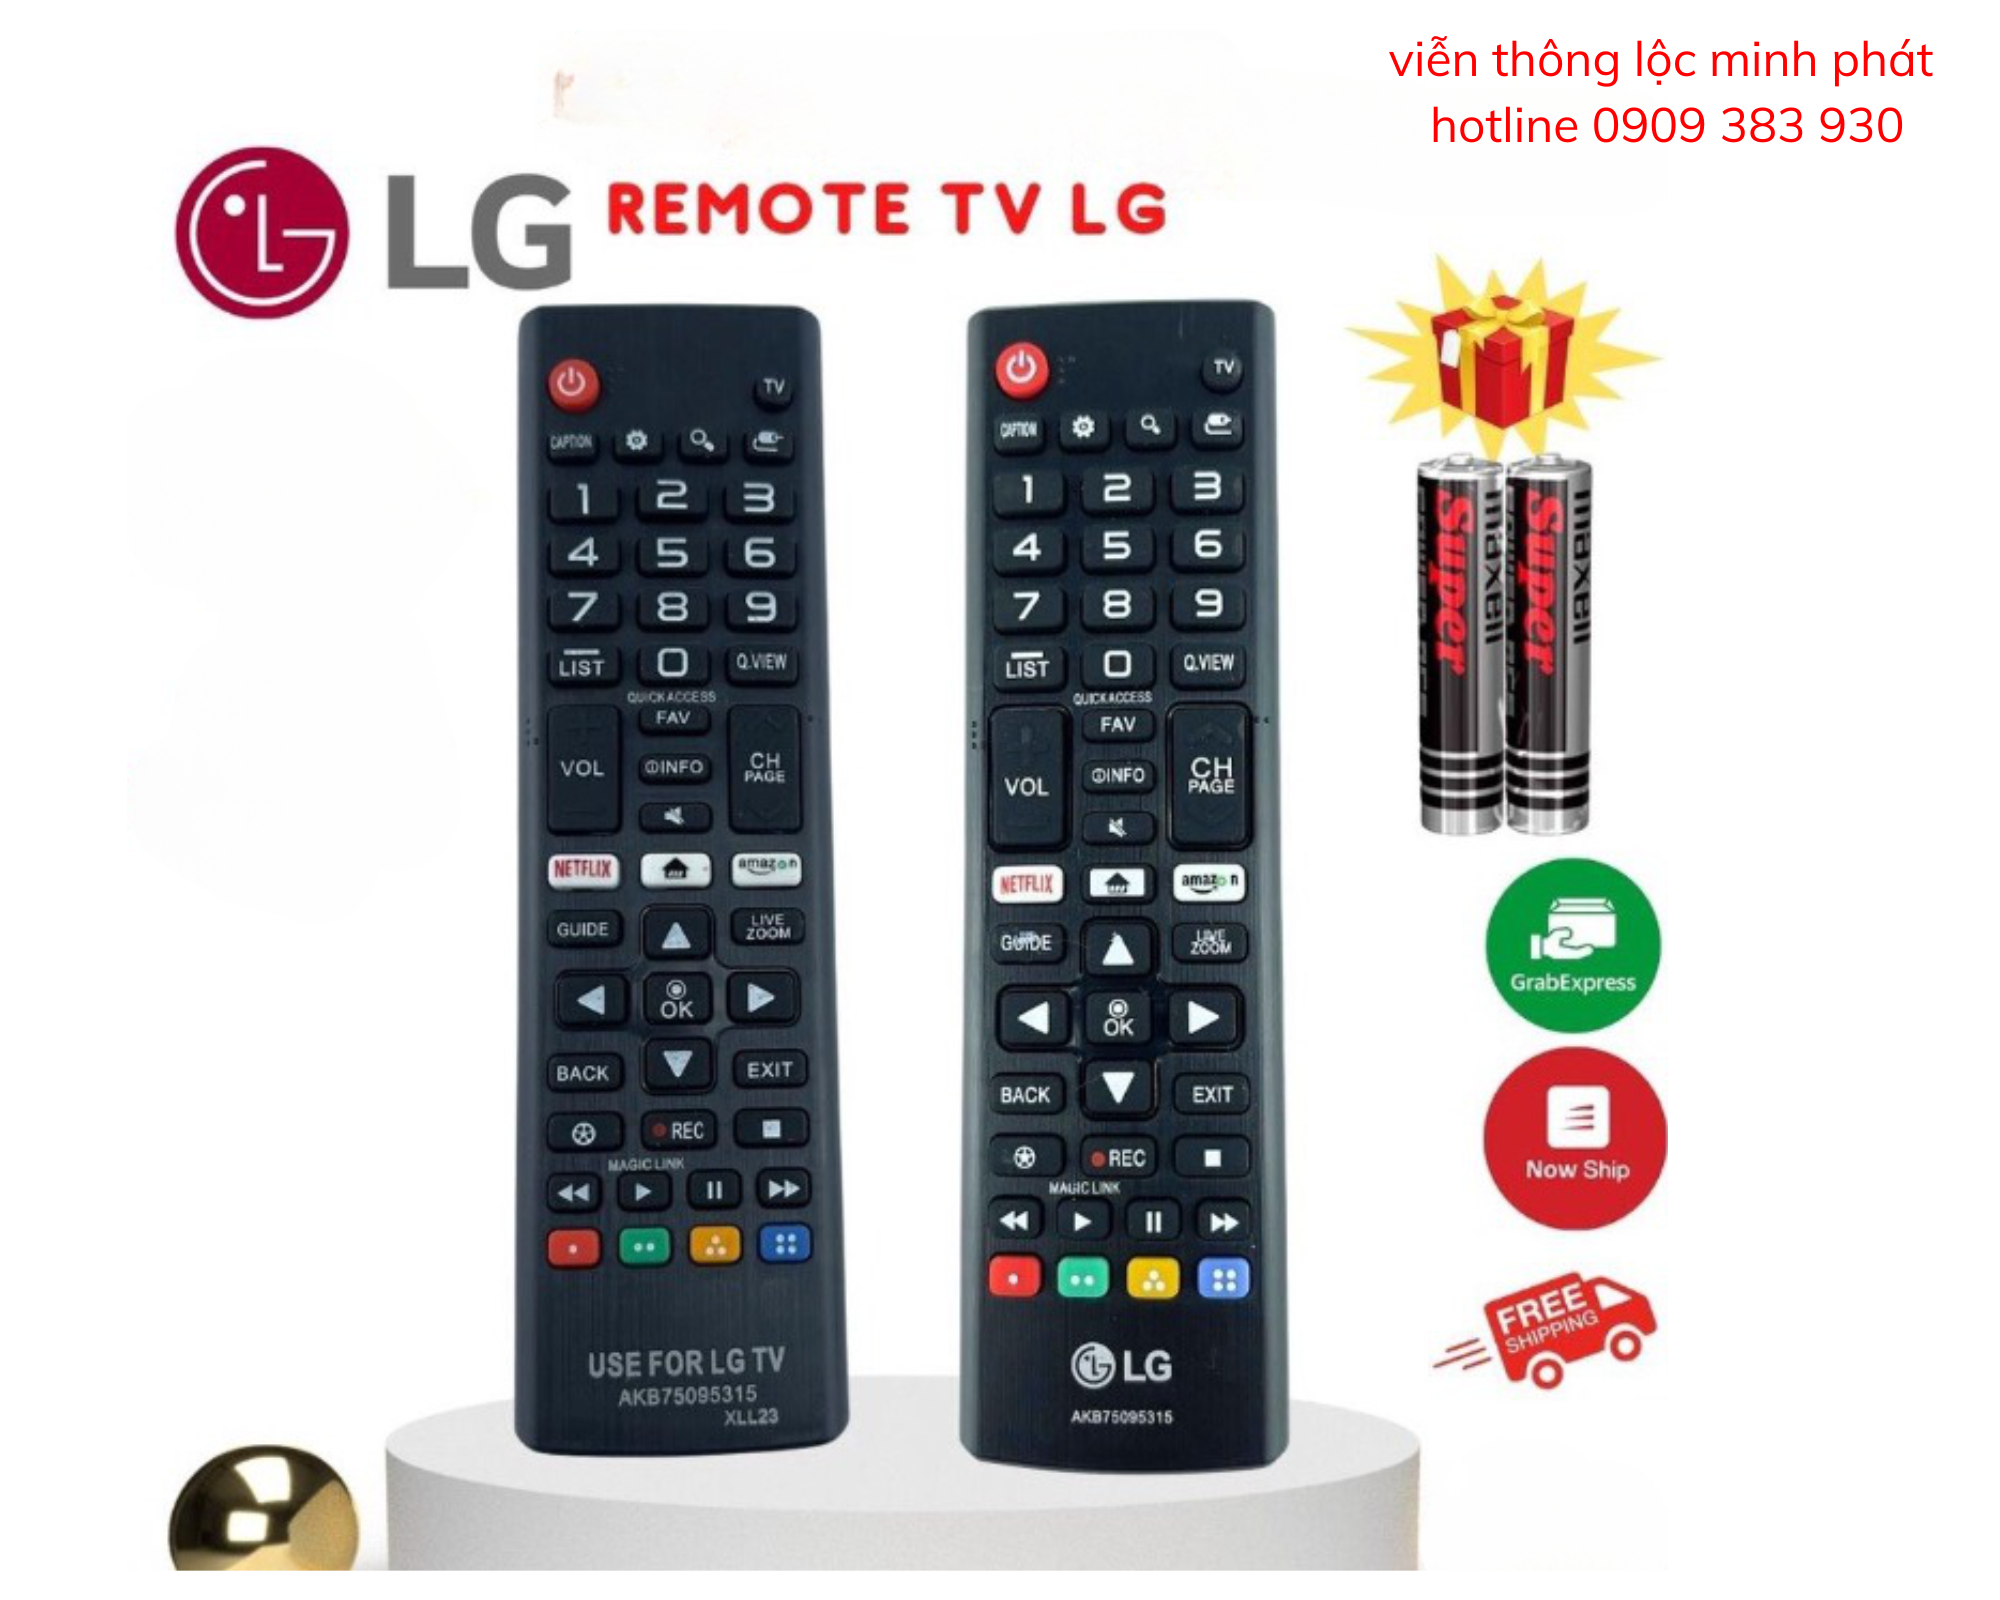 Remote điều khiển tivi LG SMART 2018, điều khiển TV LG các dòng Led / LCD - Tặng kèm pin